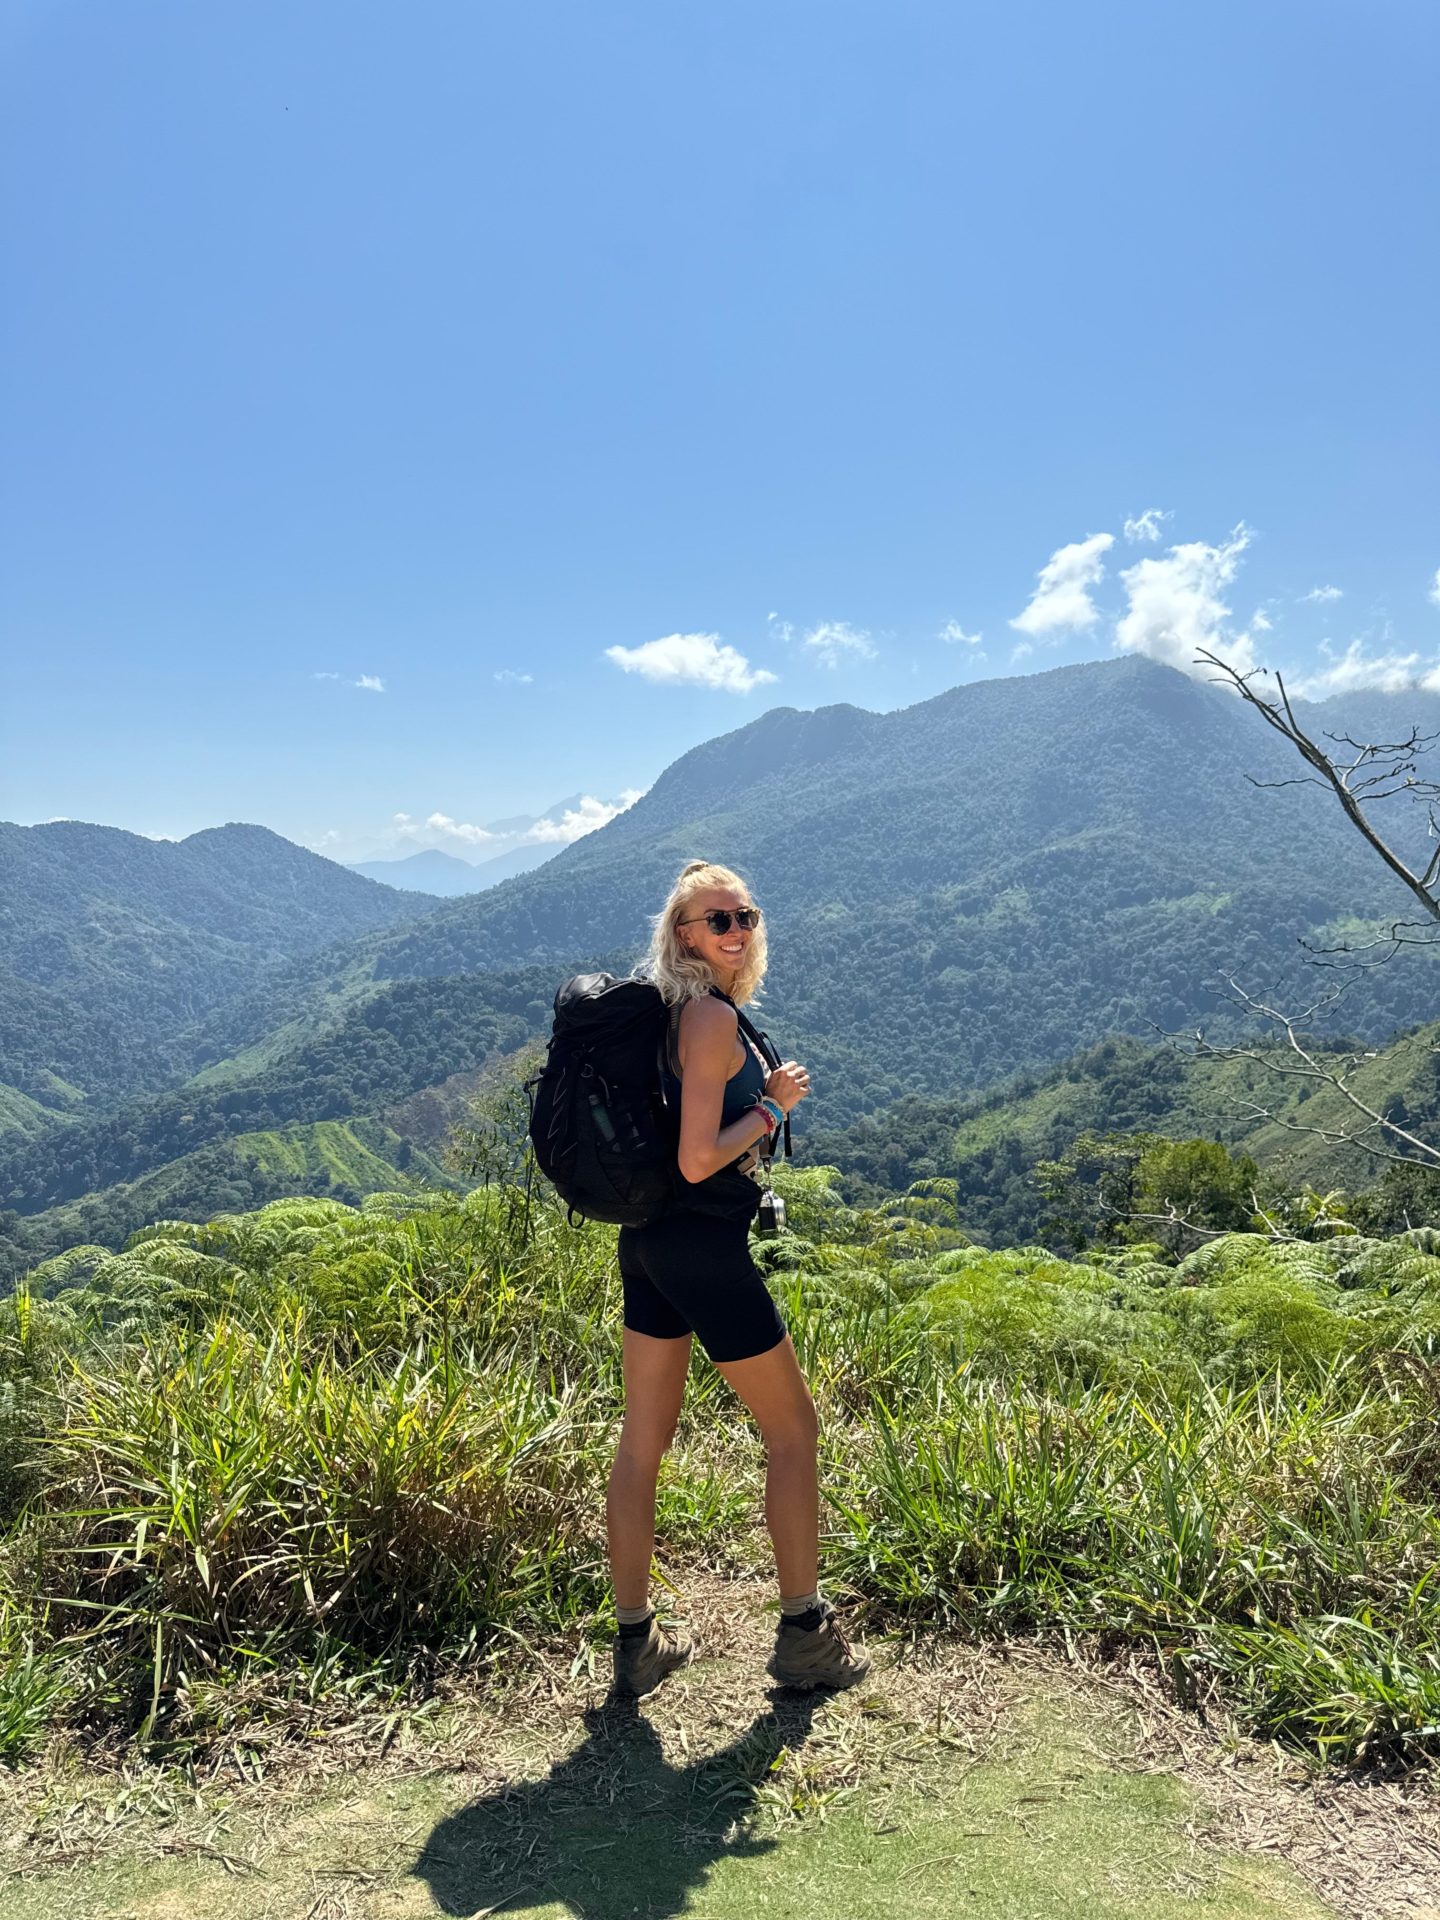 Zanna van Dijk on the Lost City Trek in Colombia